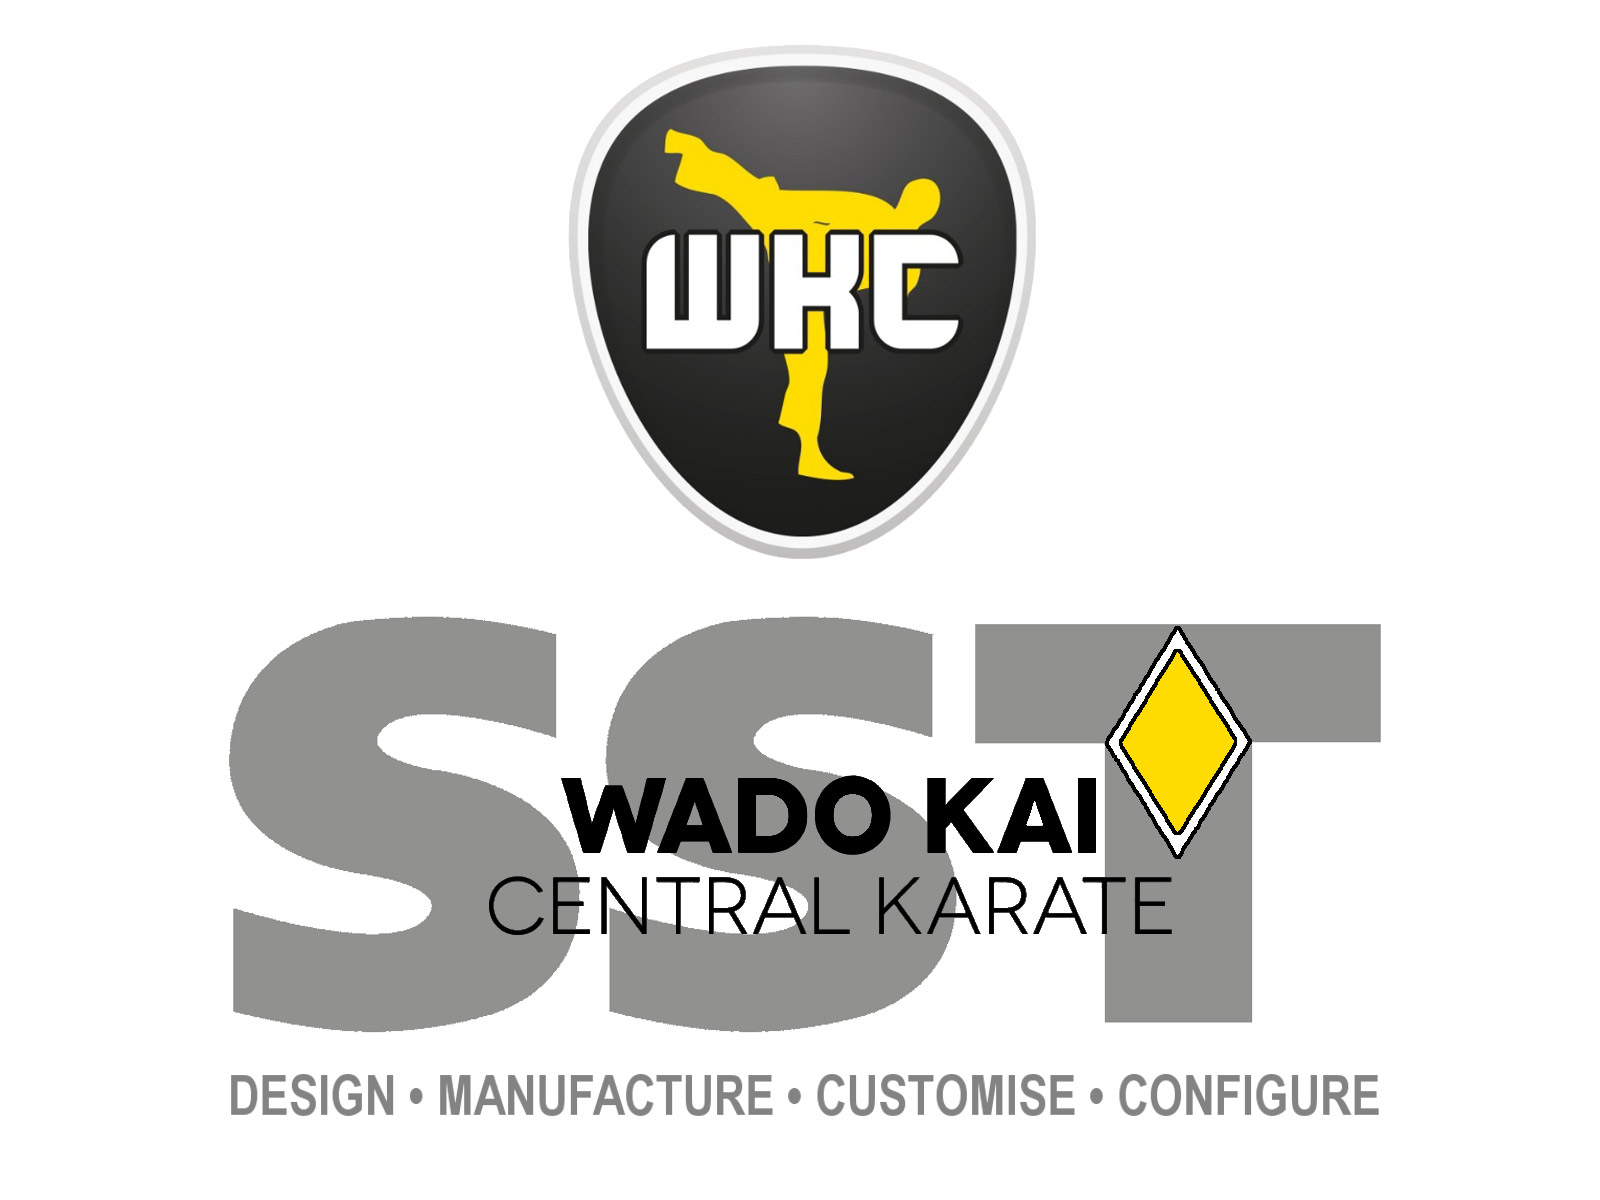 Update on Wado Kai Central Karate